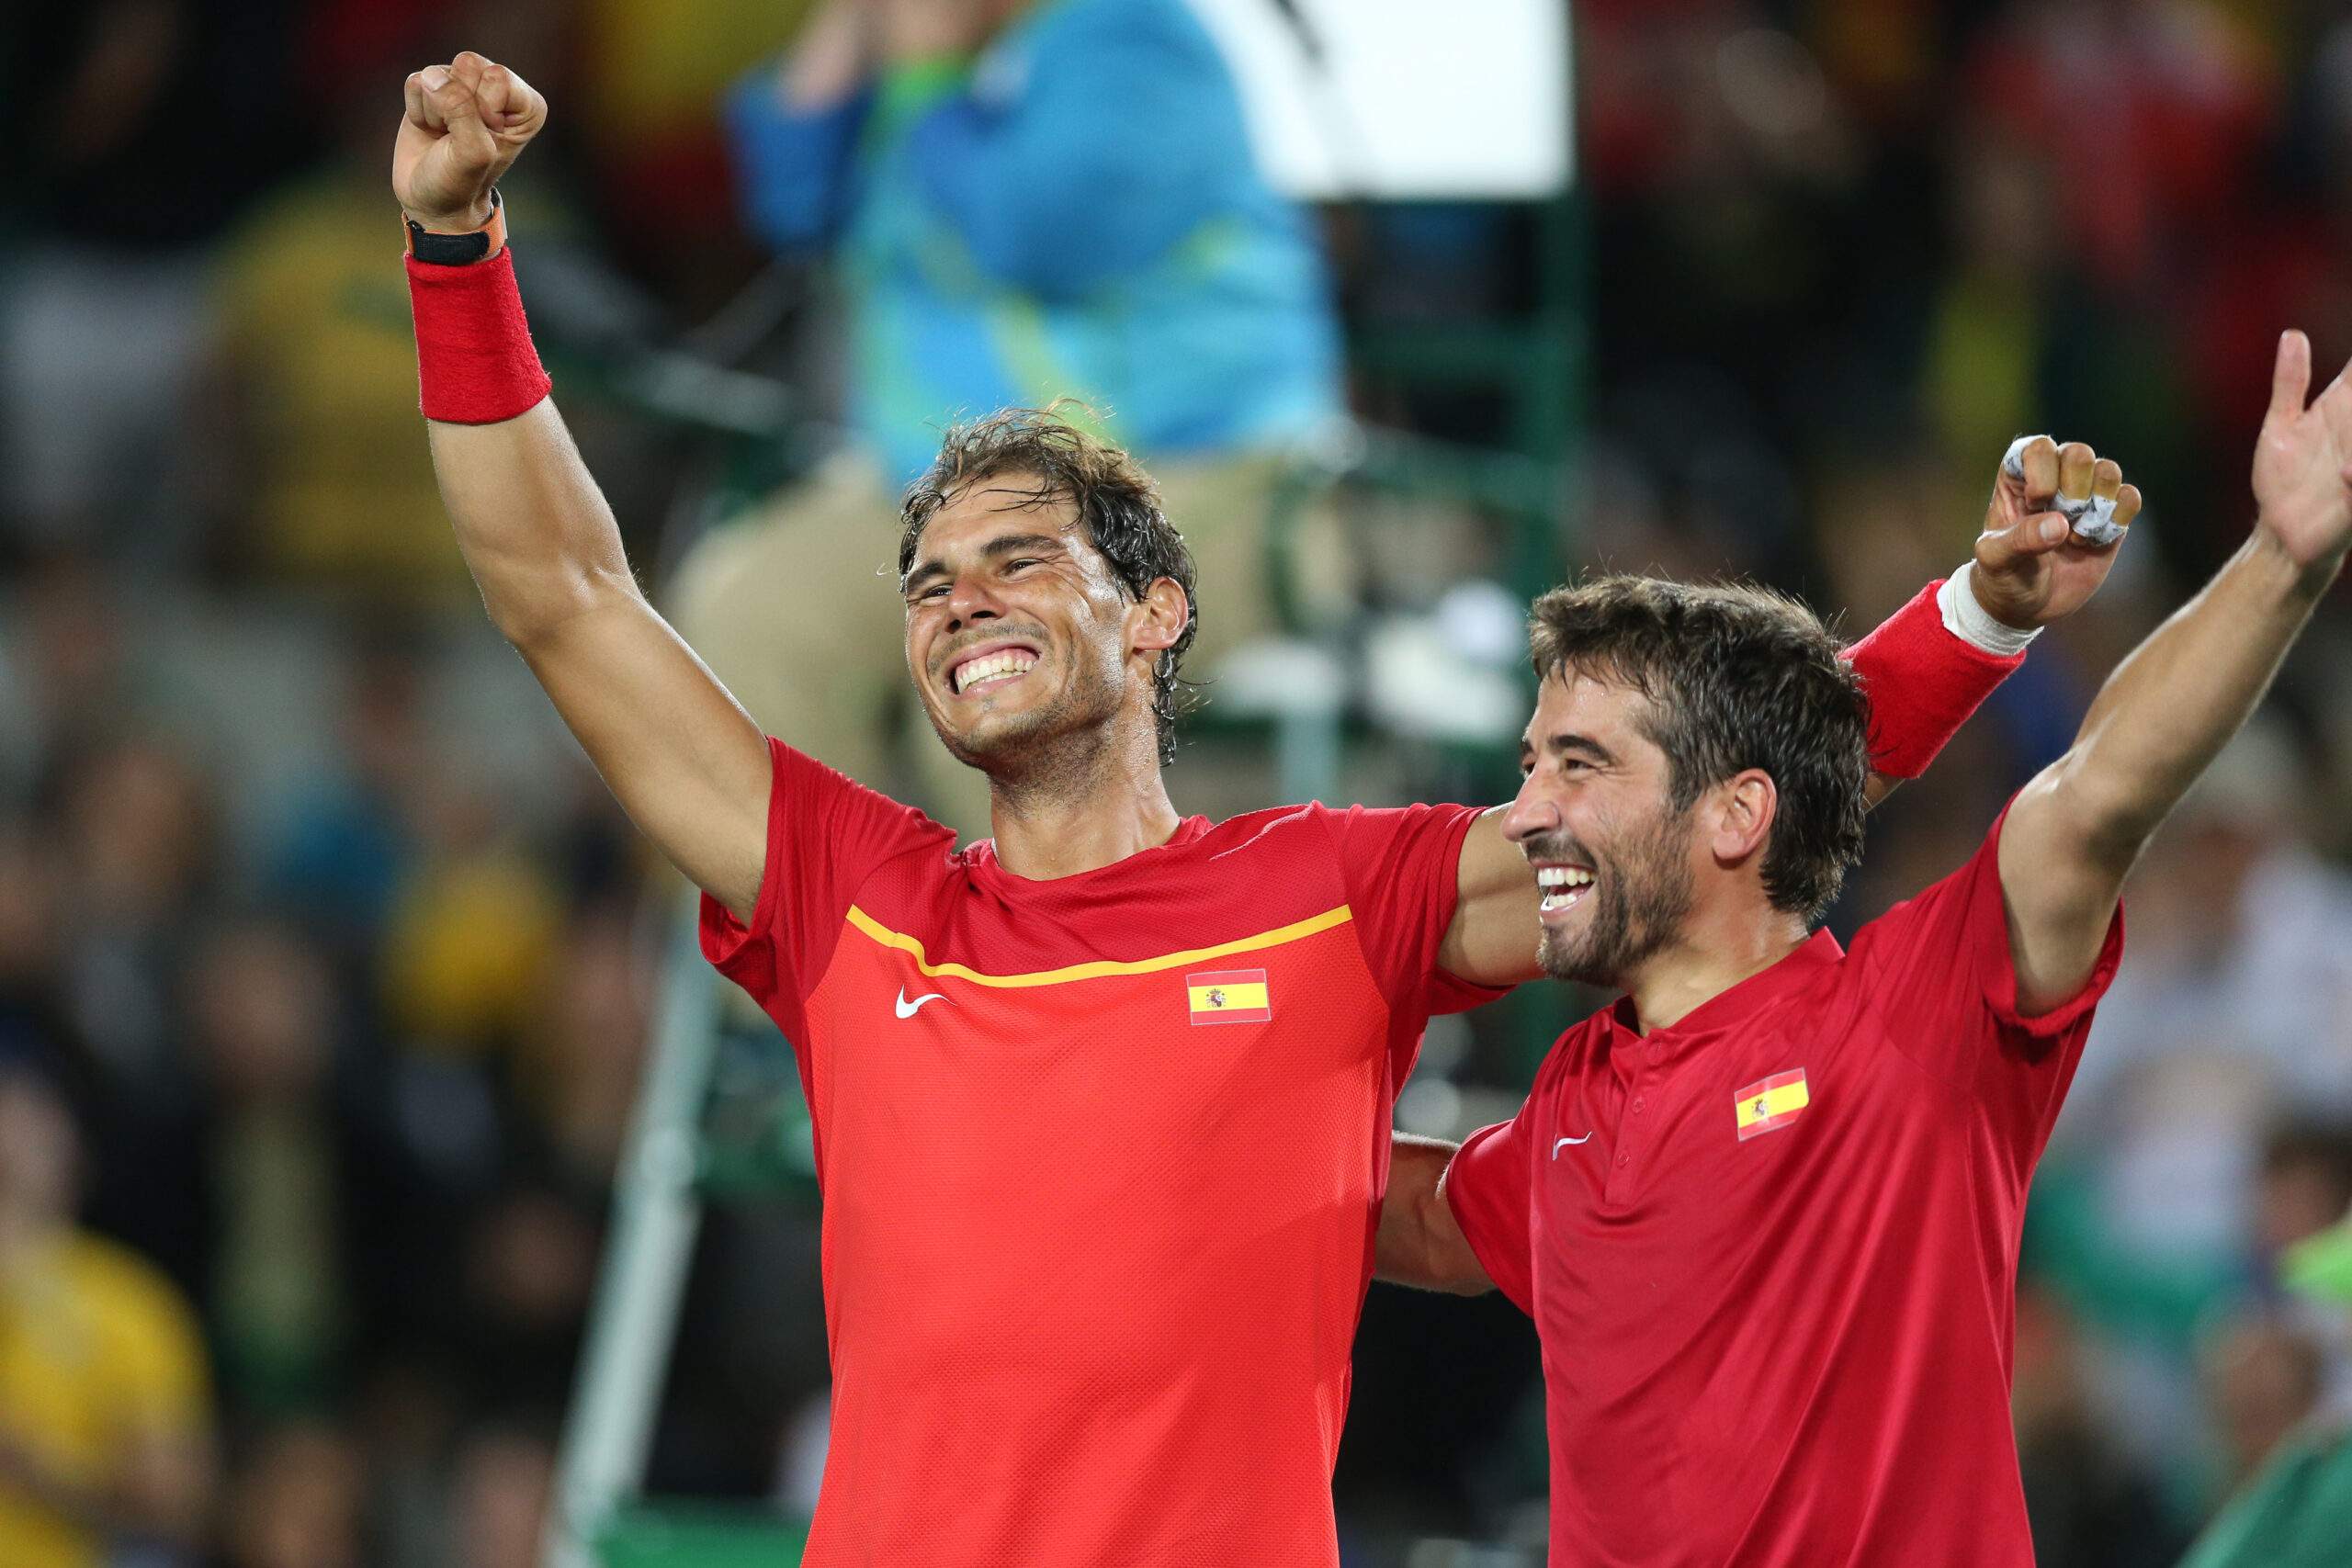 El campeón de España vuelve a la pista.  Nadal ha vuelto